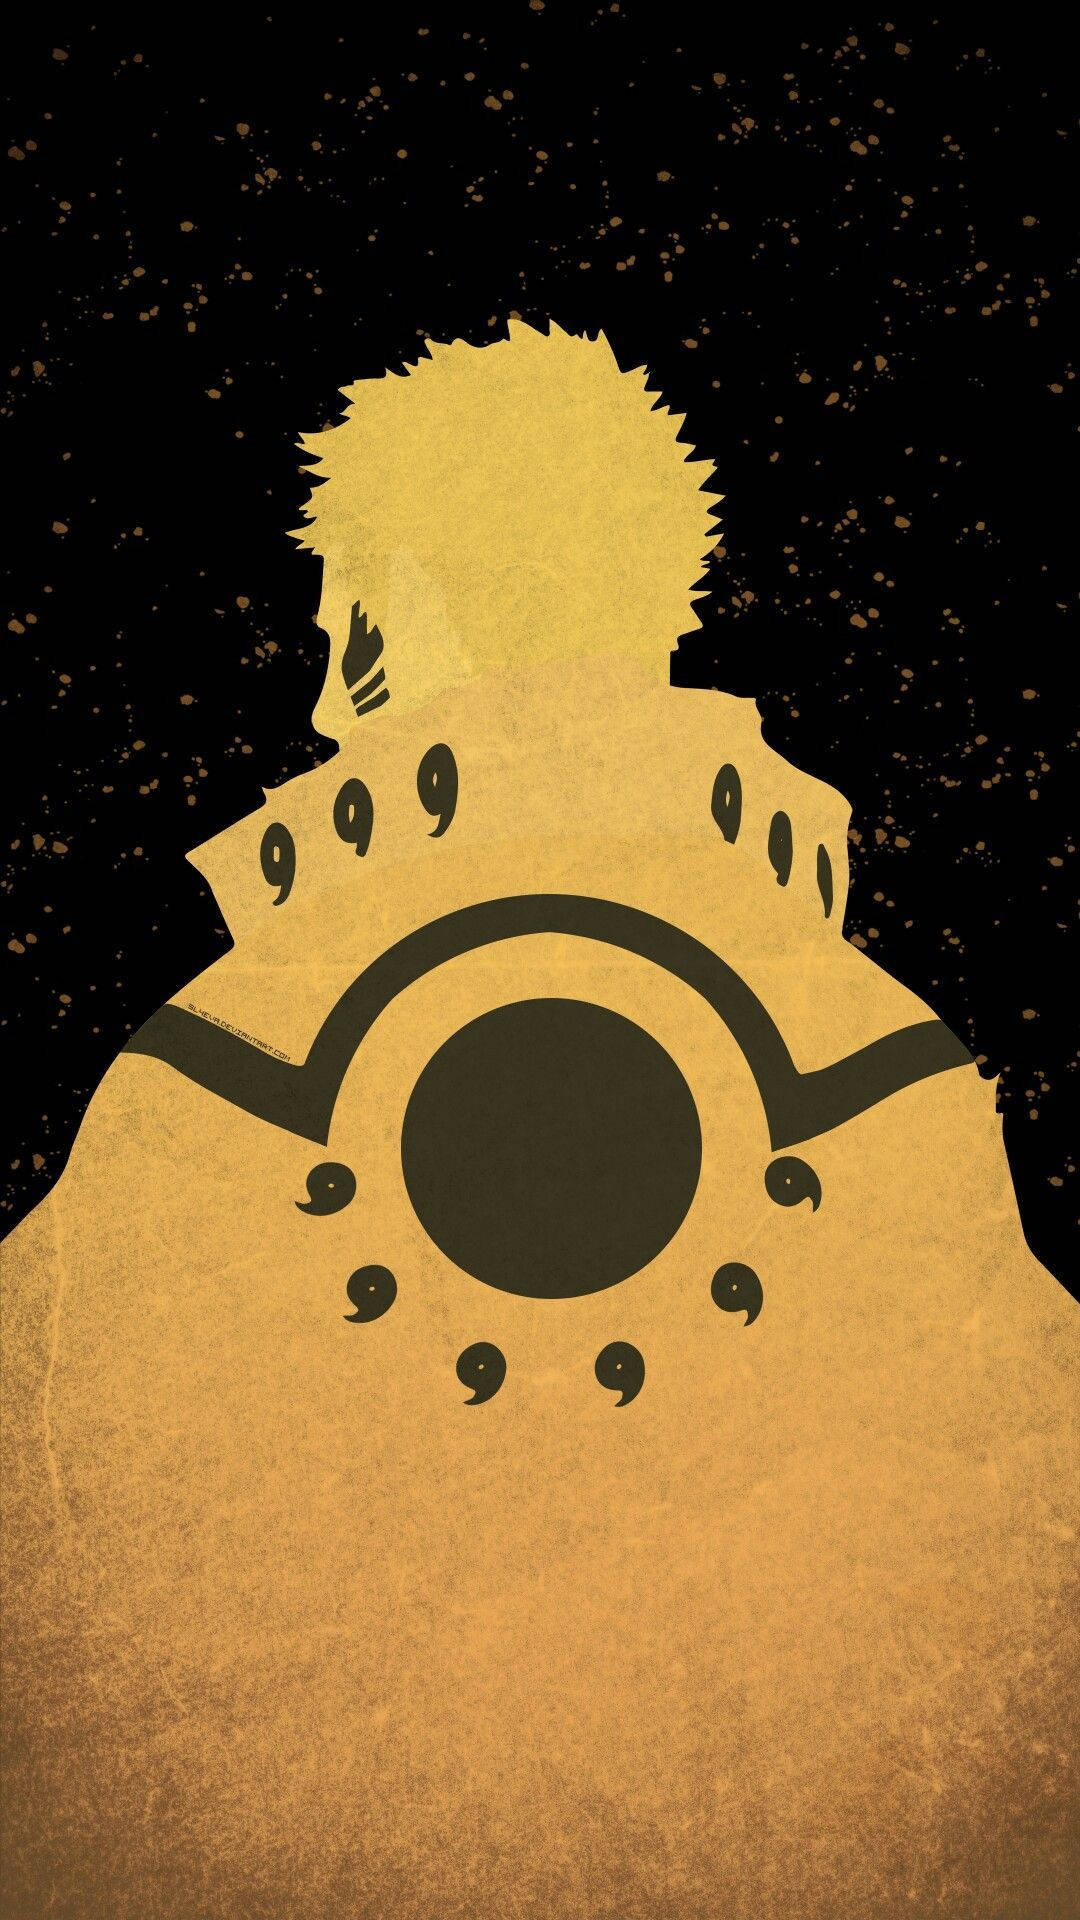 Naruto Unleashed i sin endelige form afslører en uforglemmelig scene fra anime-serien. Wallpaper